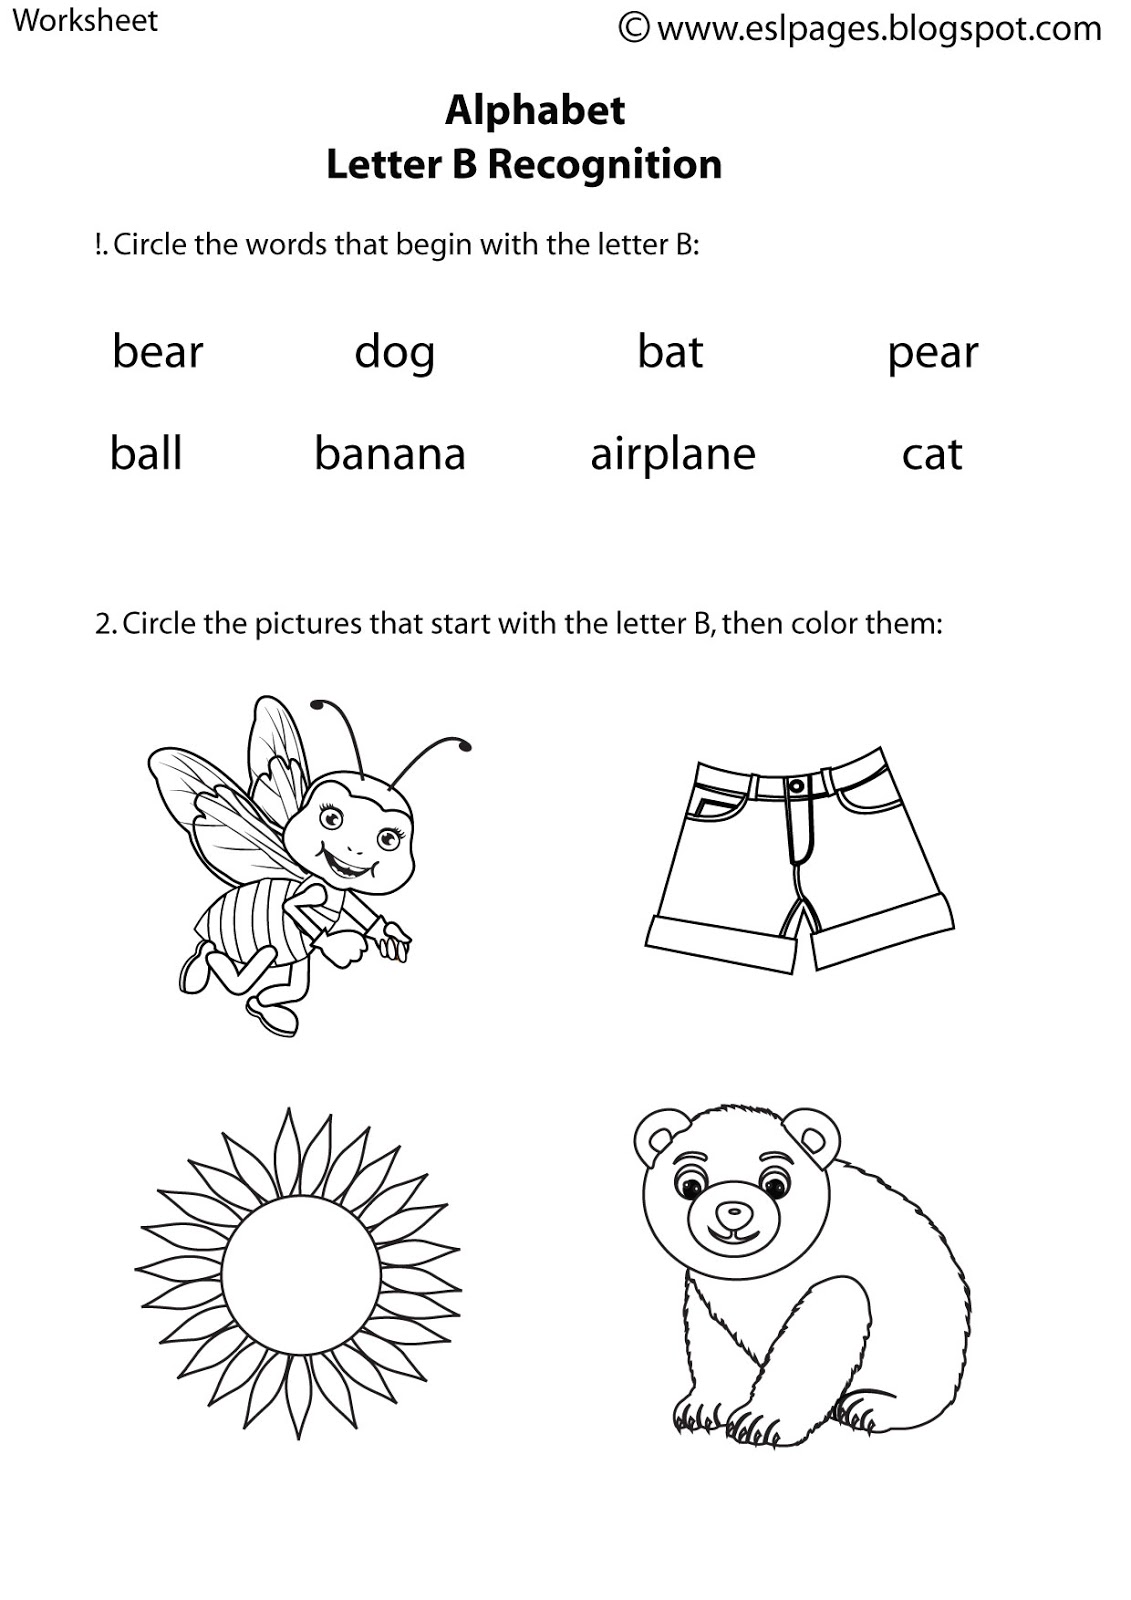 19 Best Images of Students ESL Alphabet Worksheets - Alphabet